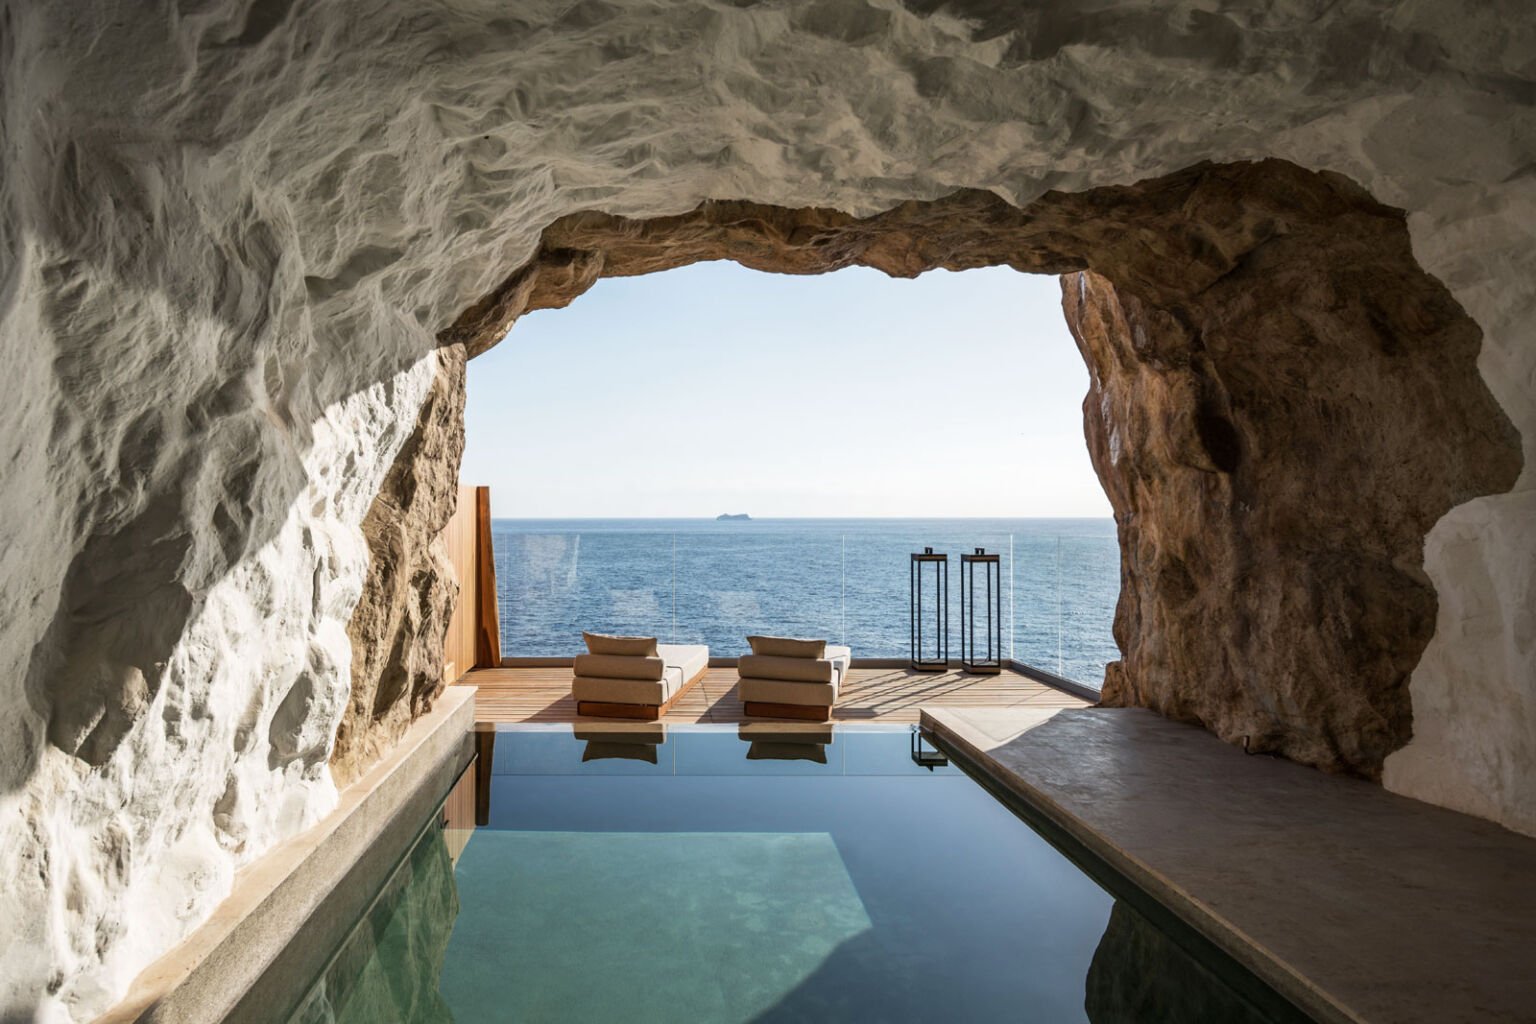 The-Cave-suite-at-ACRO-Suites-in-Crete-1536x1024.jpg